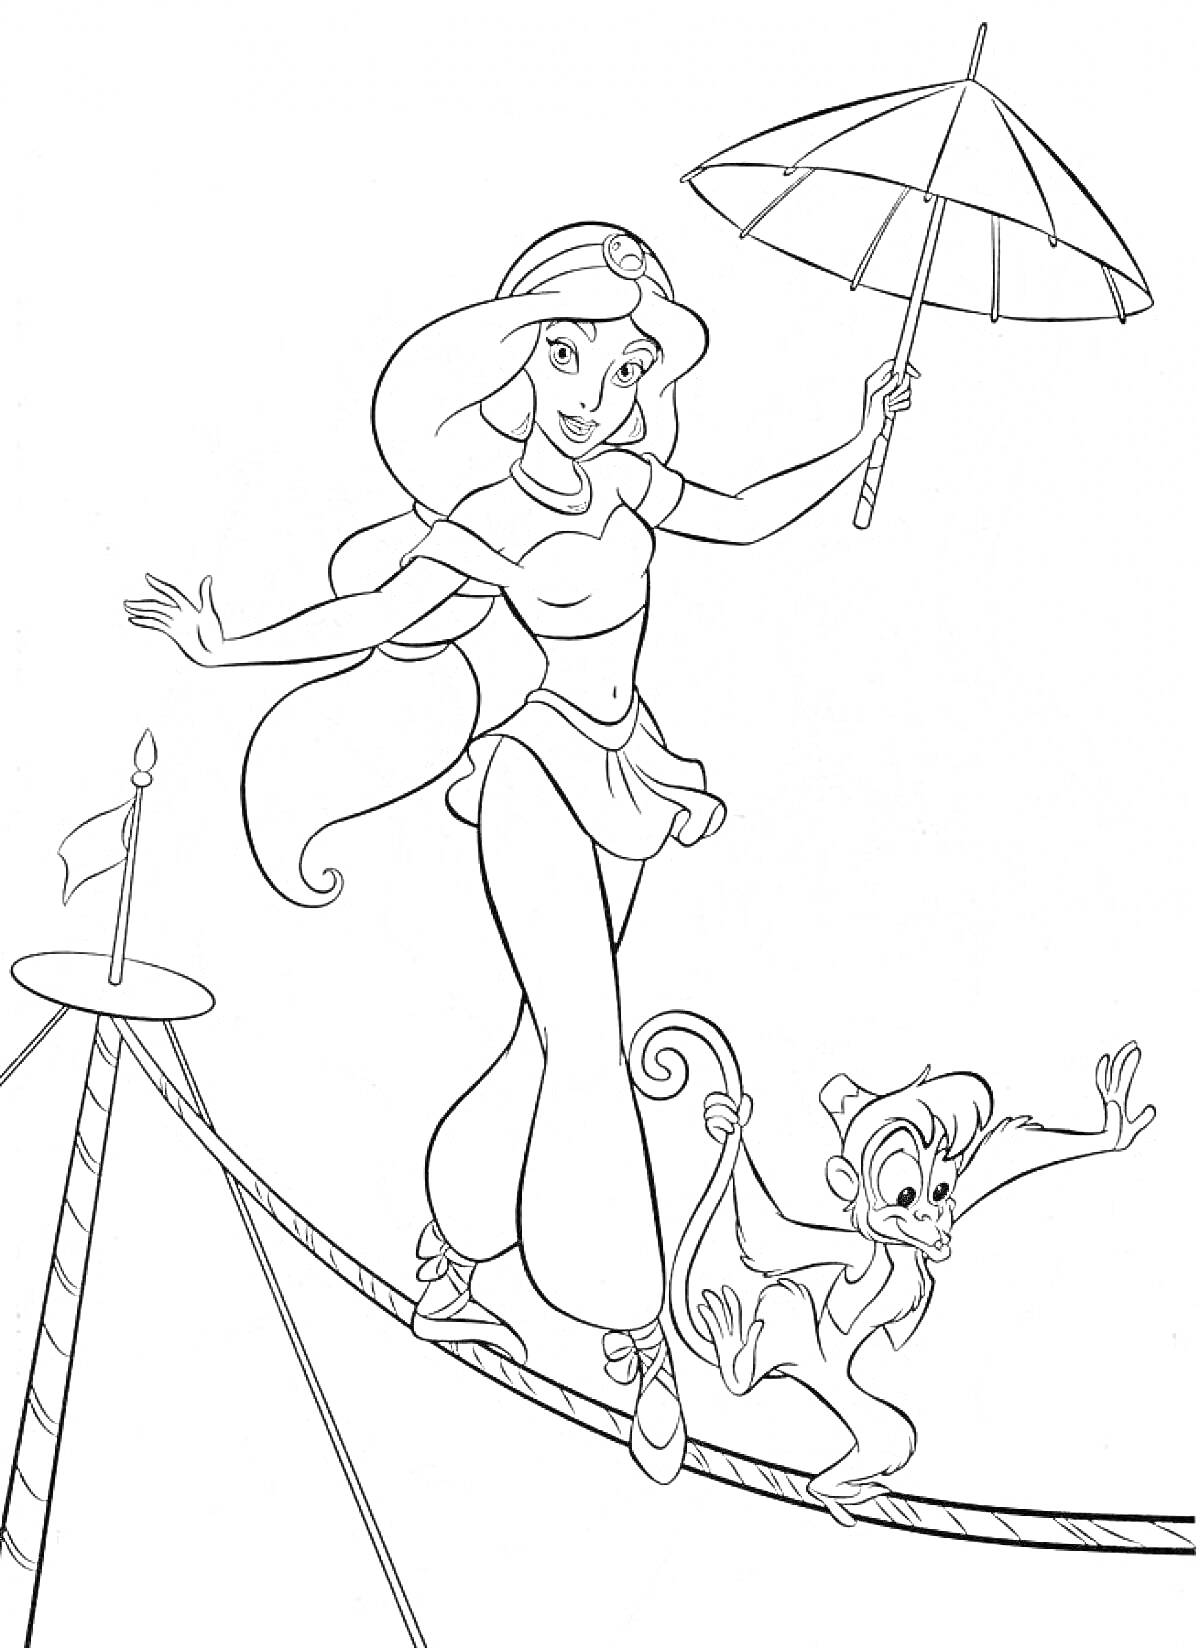 Раскраска Принцесса Жасмин идет по канату с зонтиком и обезьянкой